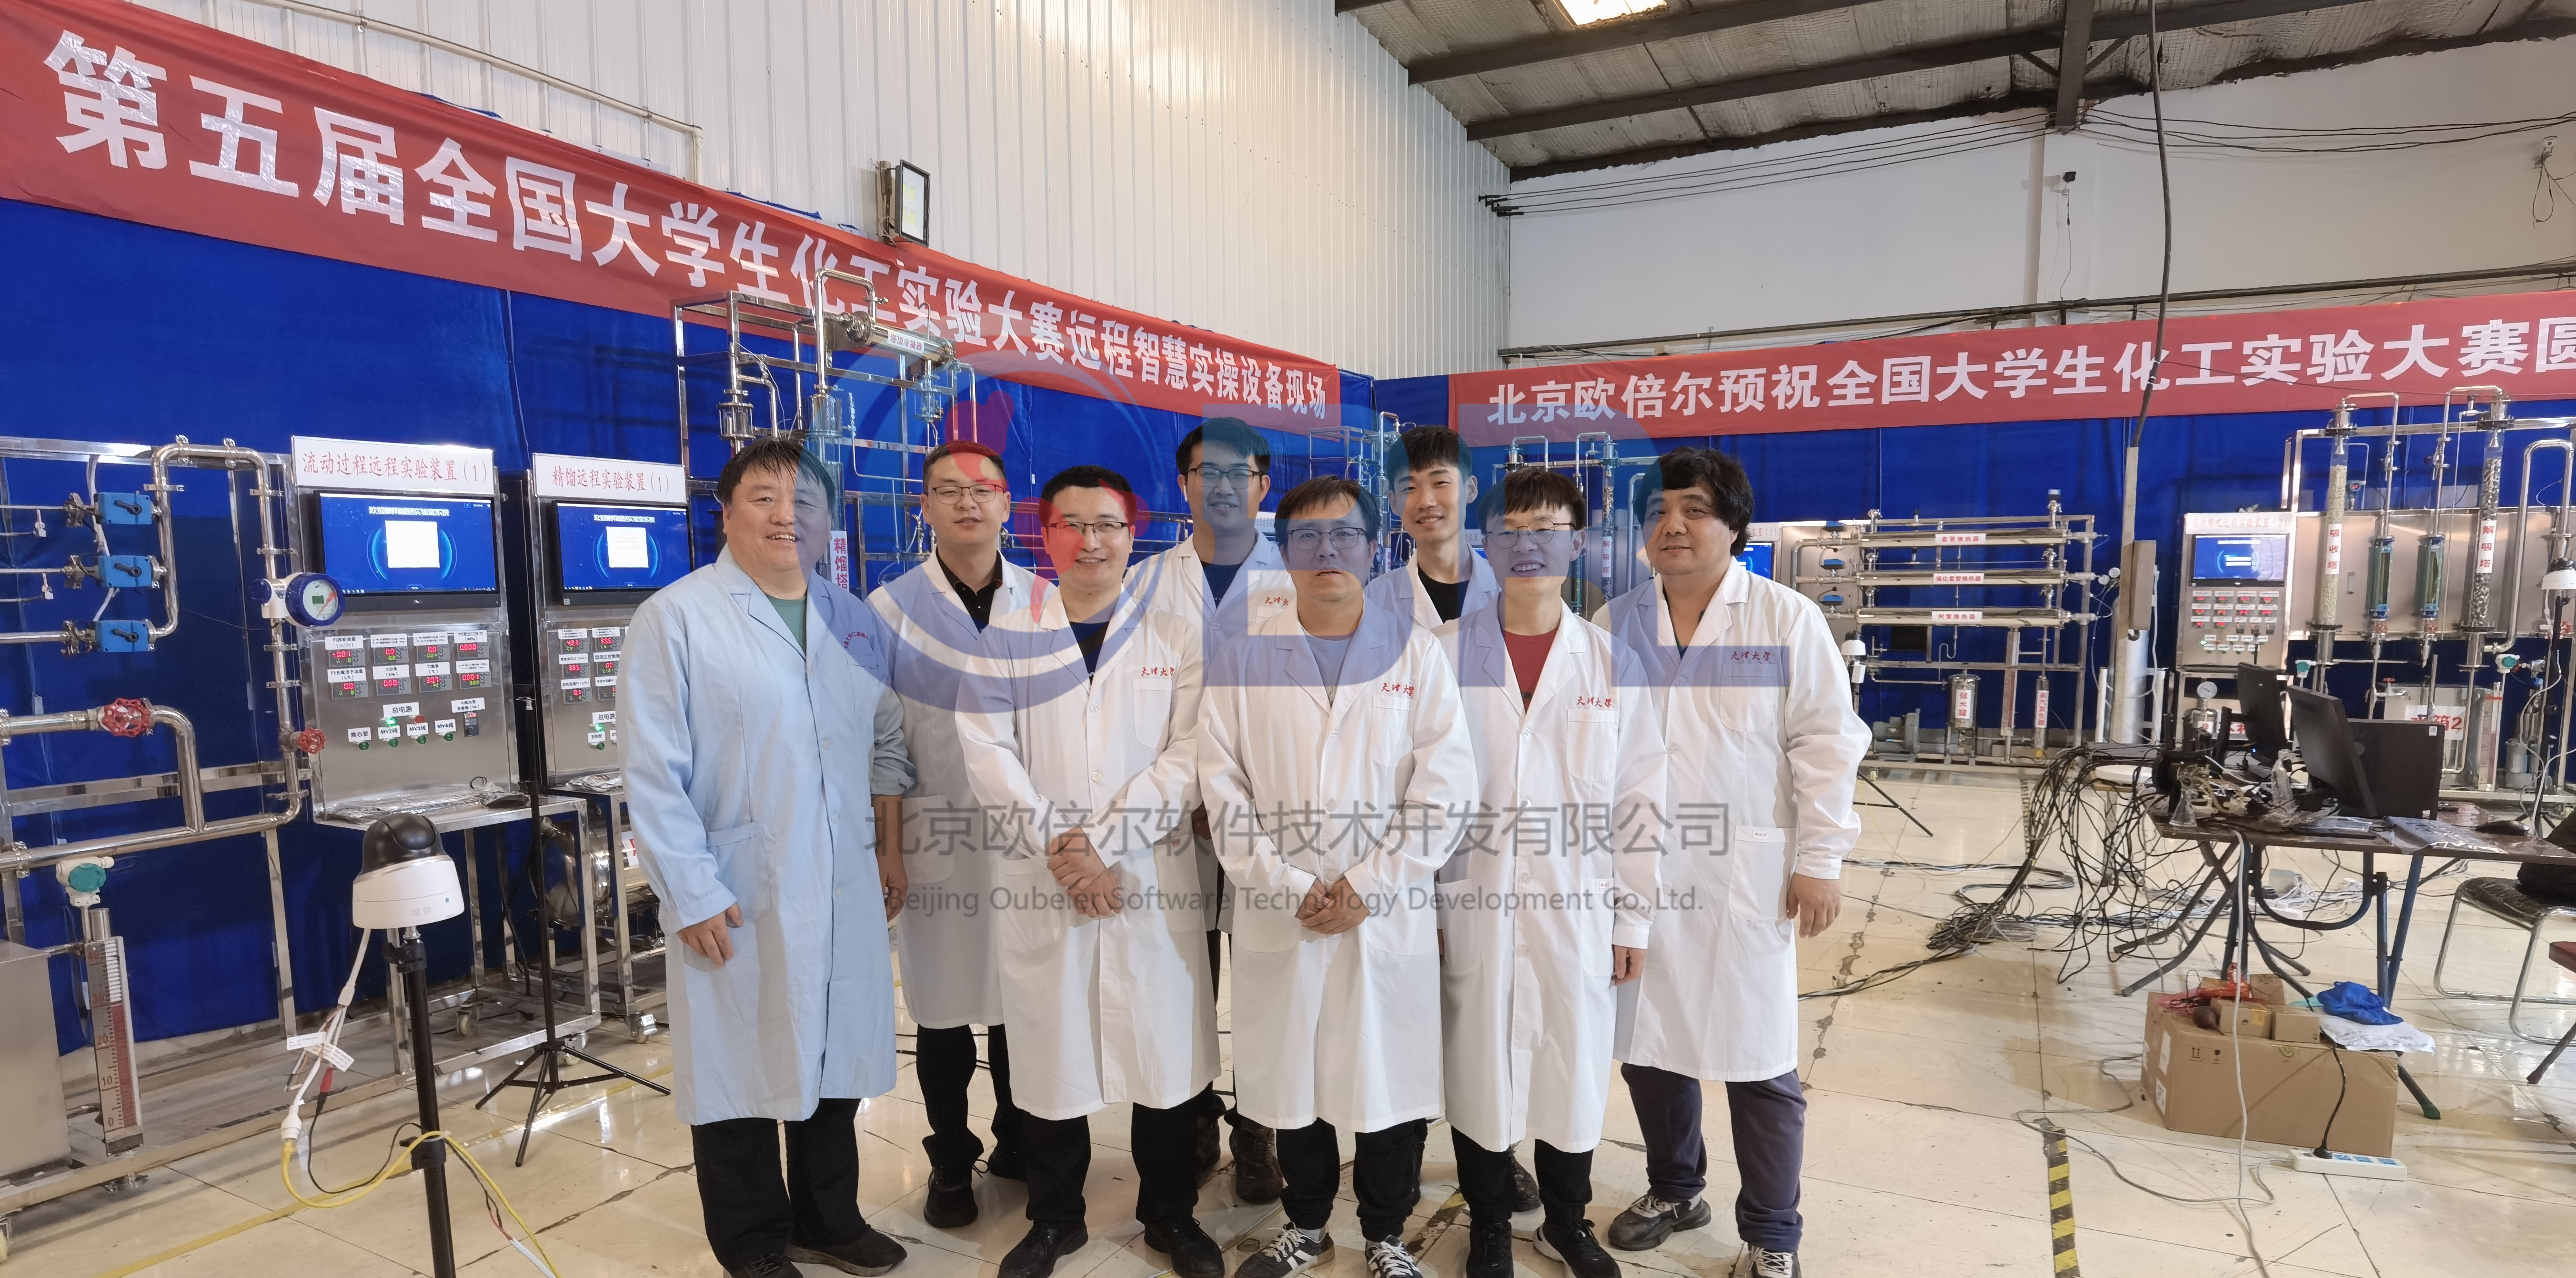 「助力大赛」第一届云南省大学生化工实验大赛圆满落幕